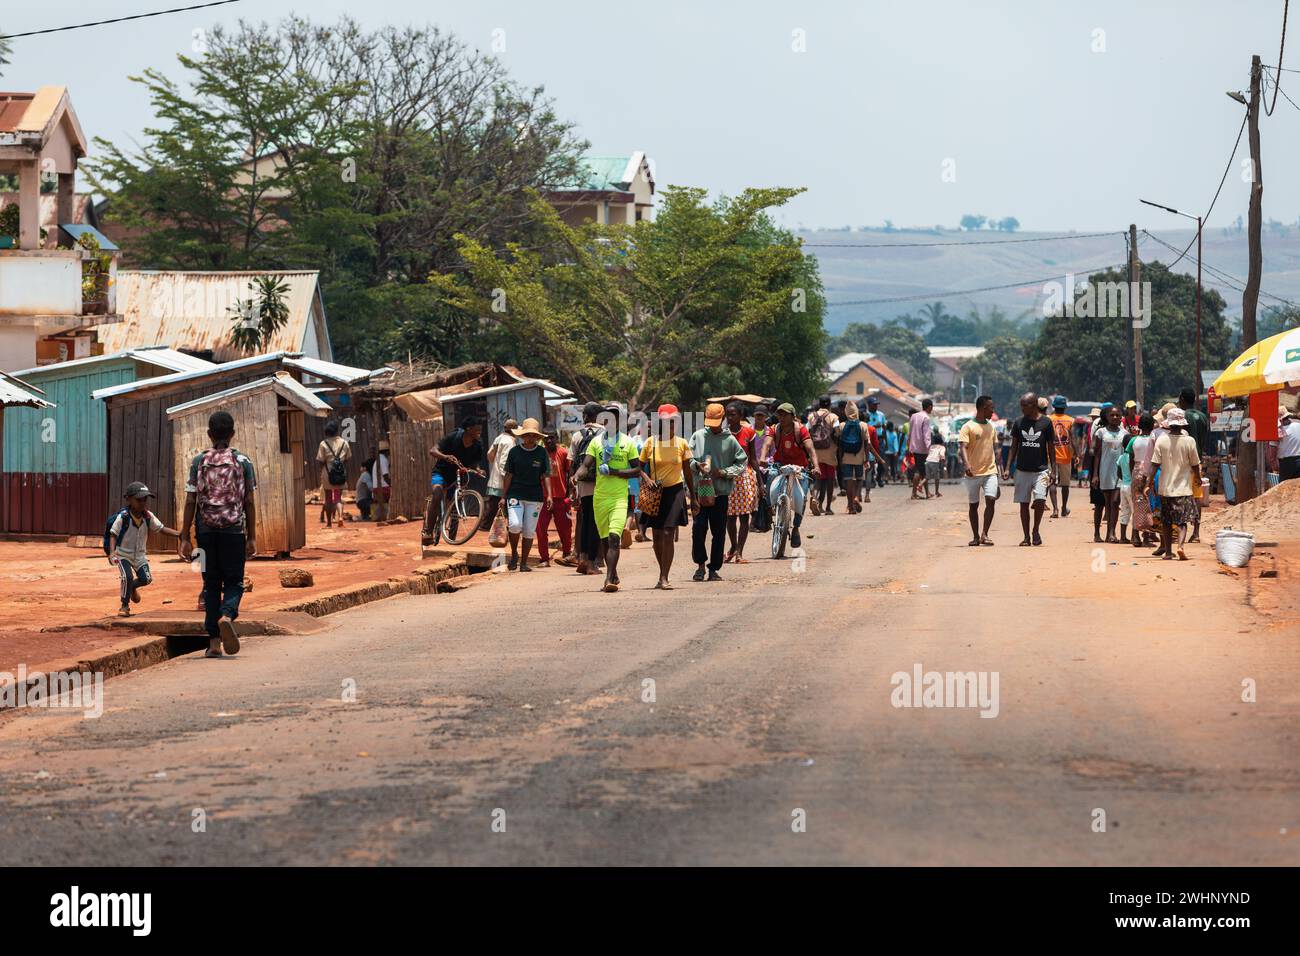 Offensichtliche Straßenfotografie von Einwohnern, die auf der Mandoto Straße in Madagaskar spazieren gehen und ihrem Alltag nachgehen. Stockfoto